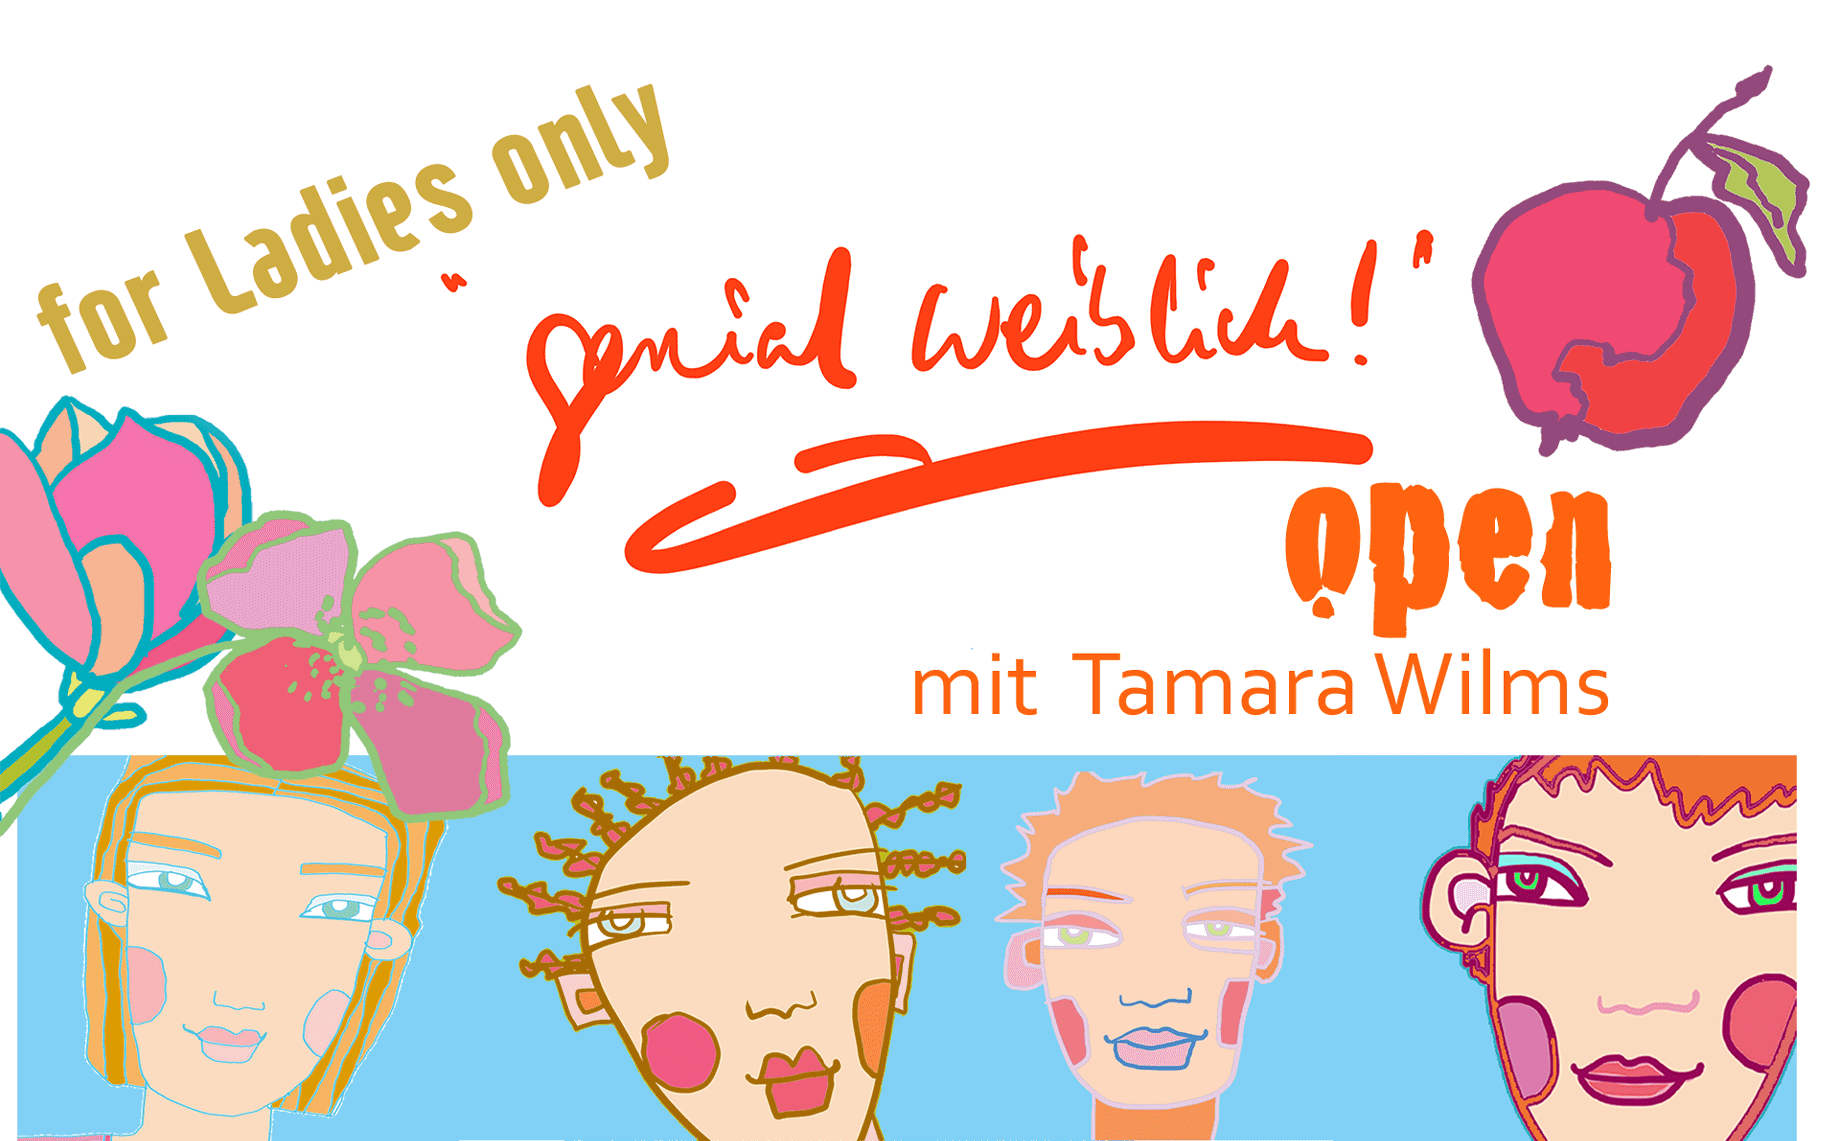 for Ladies only "genial weiblich!" open mit Tamara Wilms